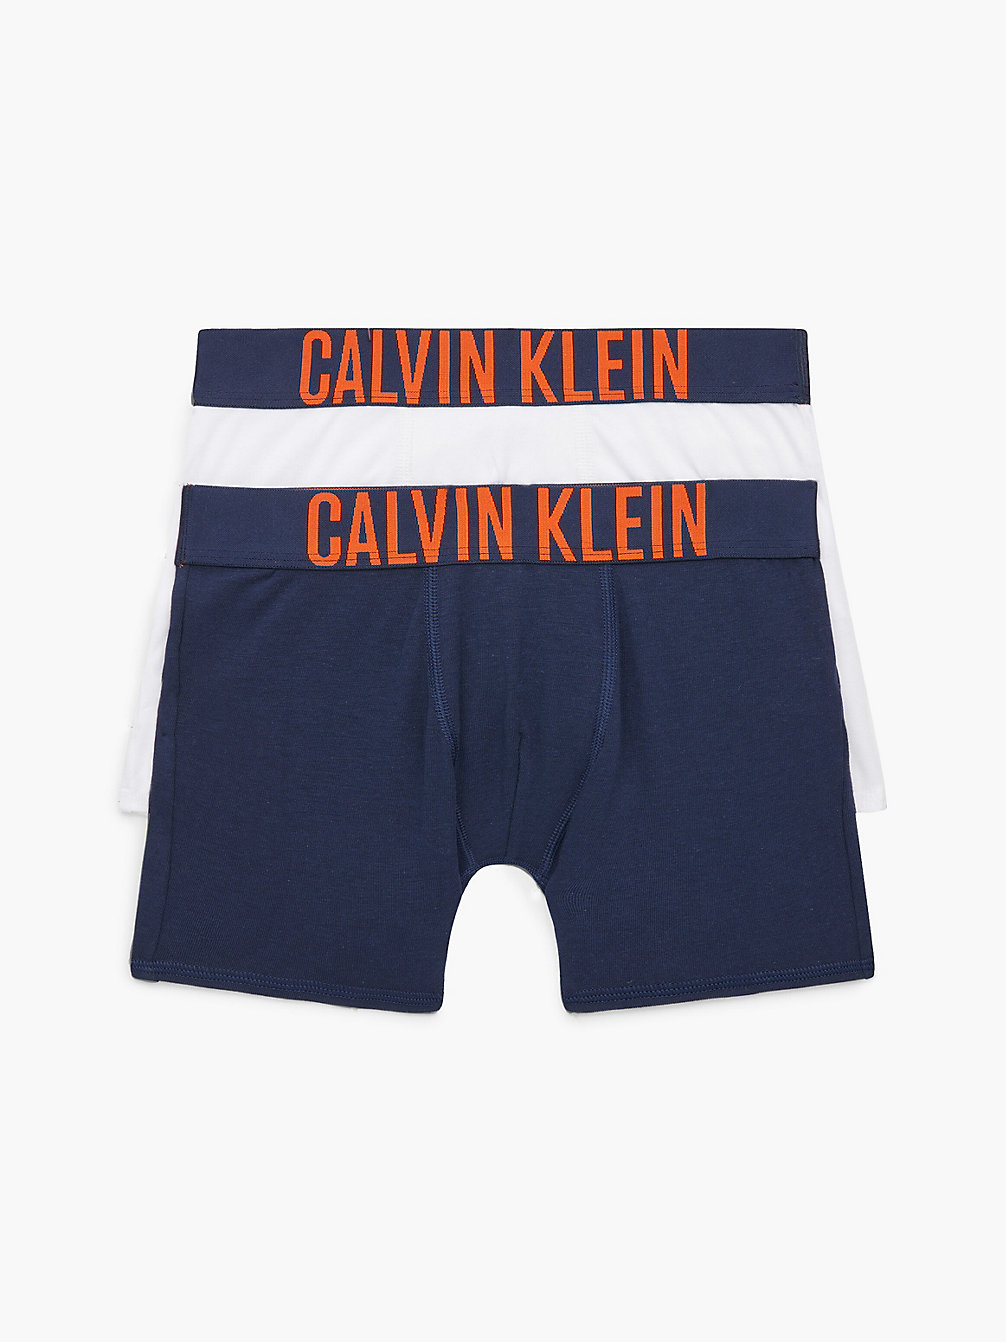 NAVYIRIS/PVHWHITE 2er-Pack Boxershorts Für Jungen - Intense Power undefined Jungen Calvin Klein